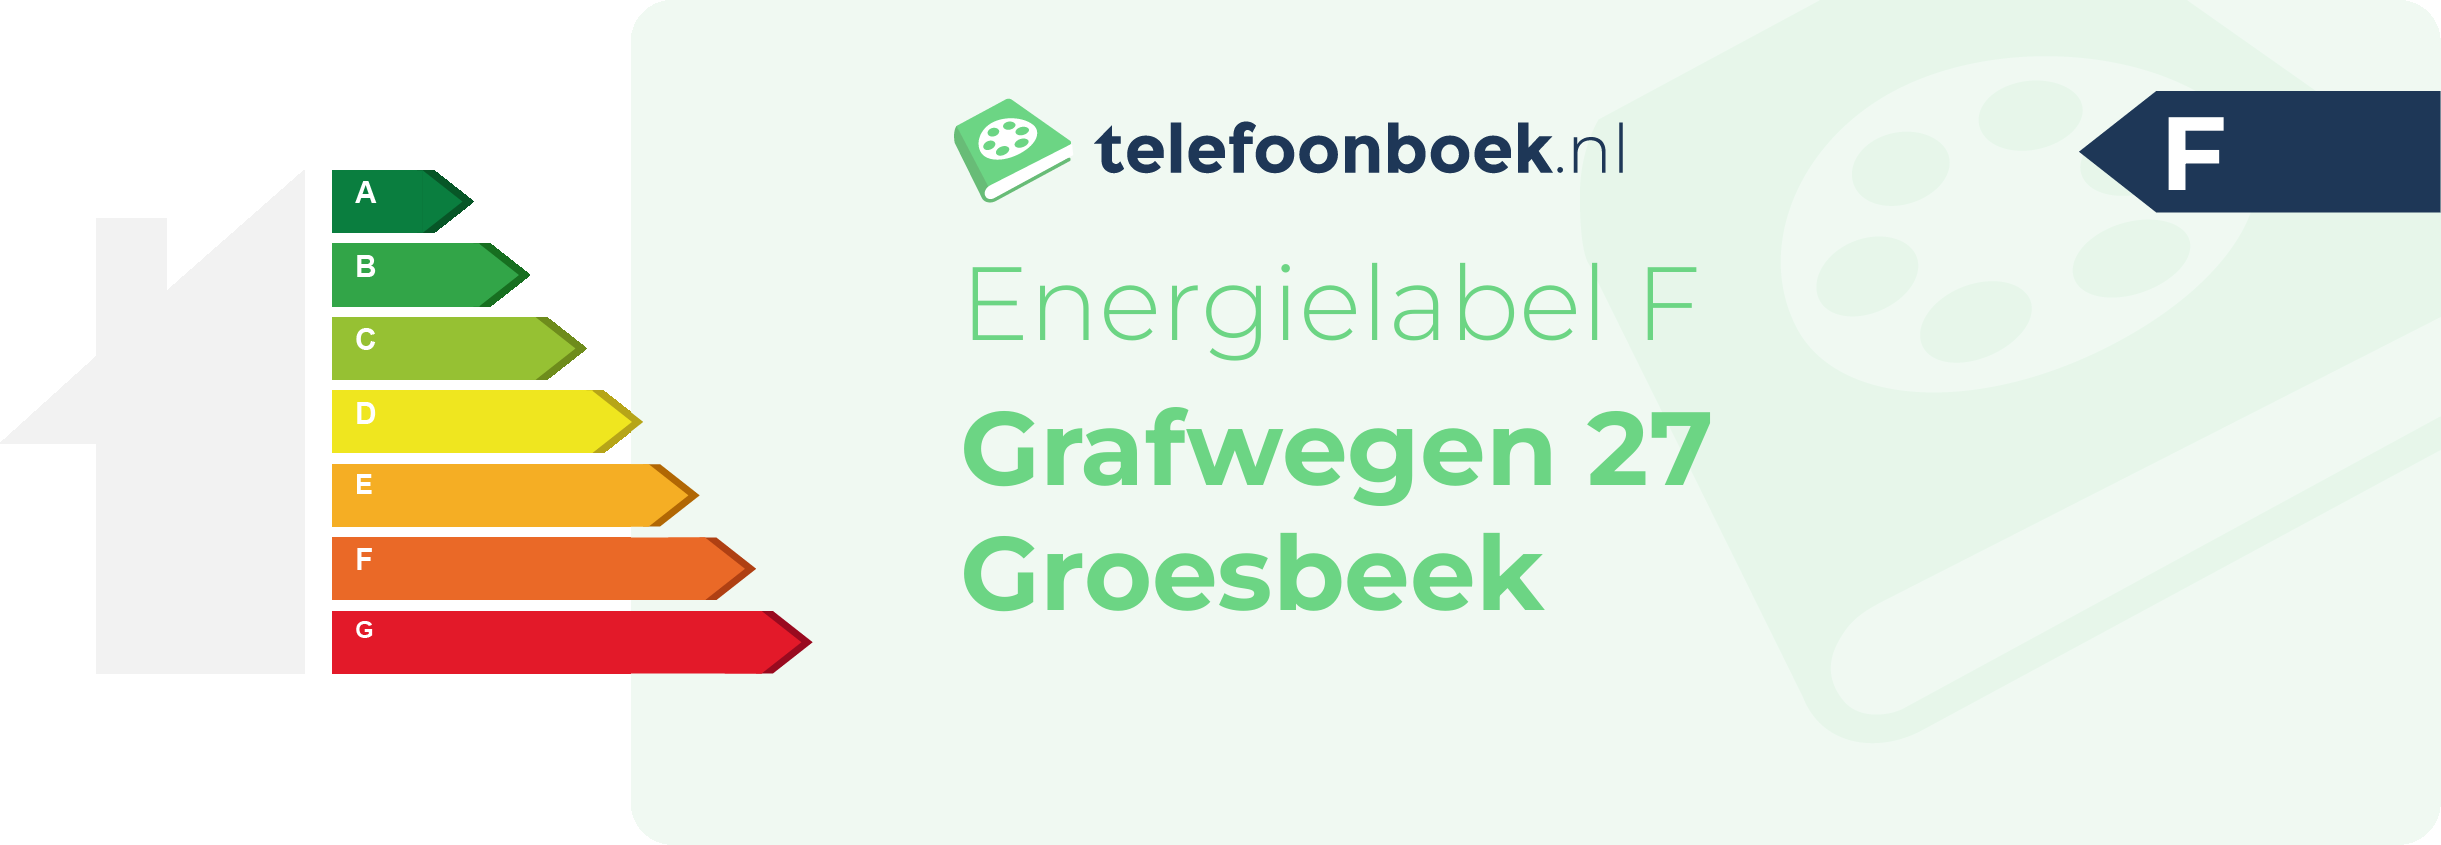 Energielabel Grafwegen 27 Groesbeek